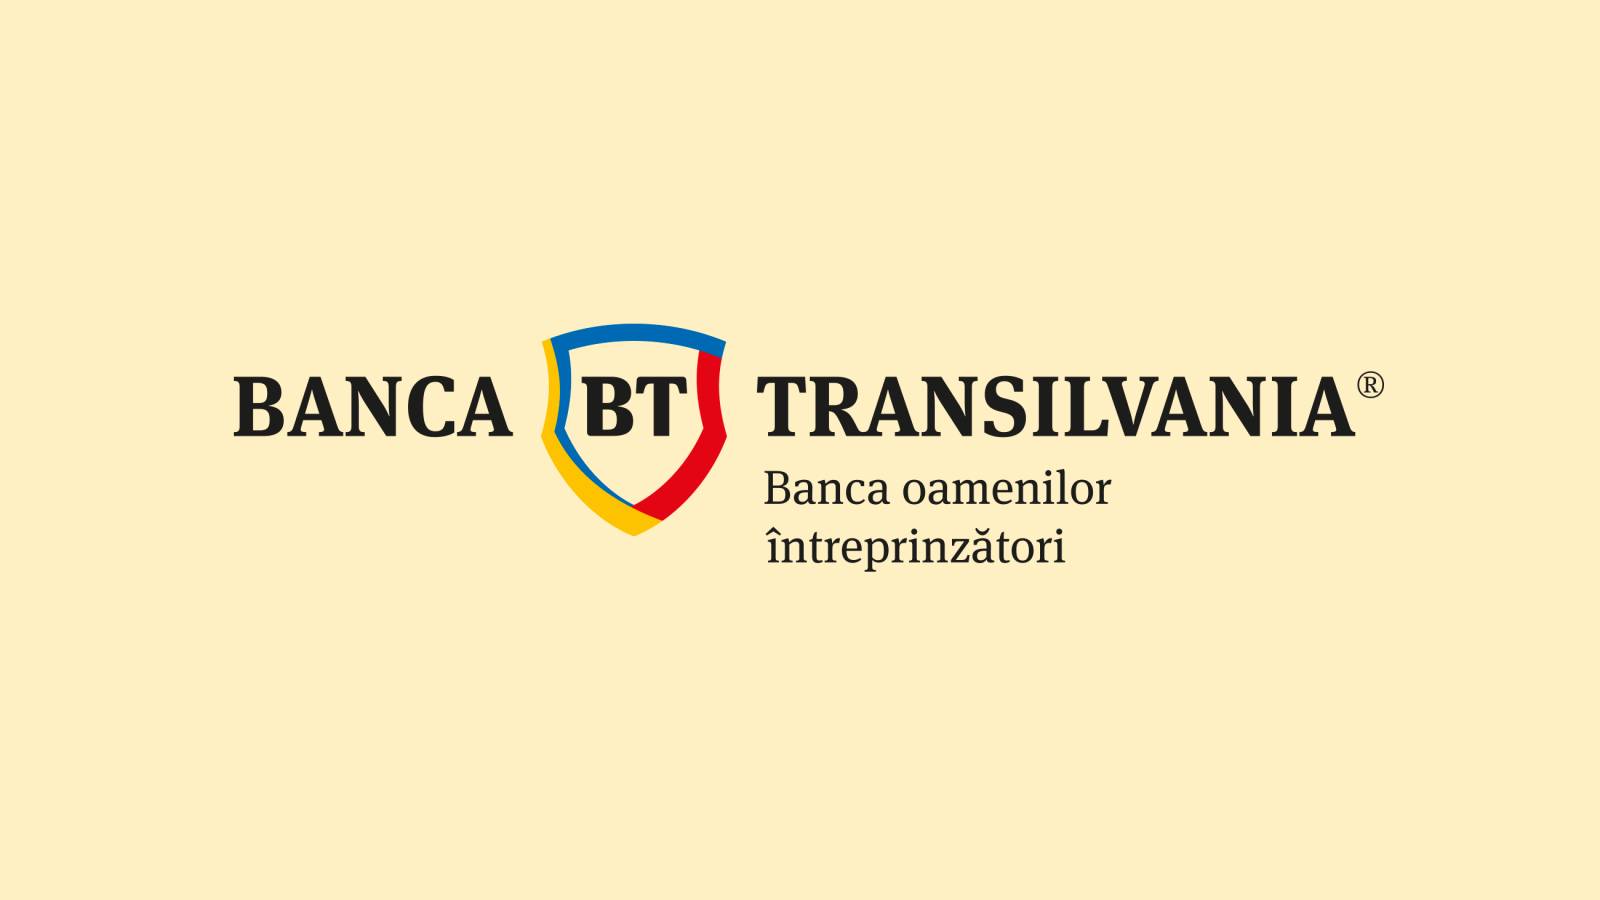 BANCA Transilvania Oficiala IMPORTANTA Noua ATENTIONARE Directionata Clienti